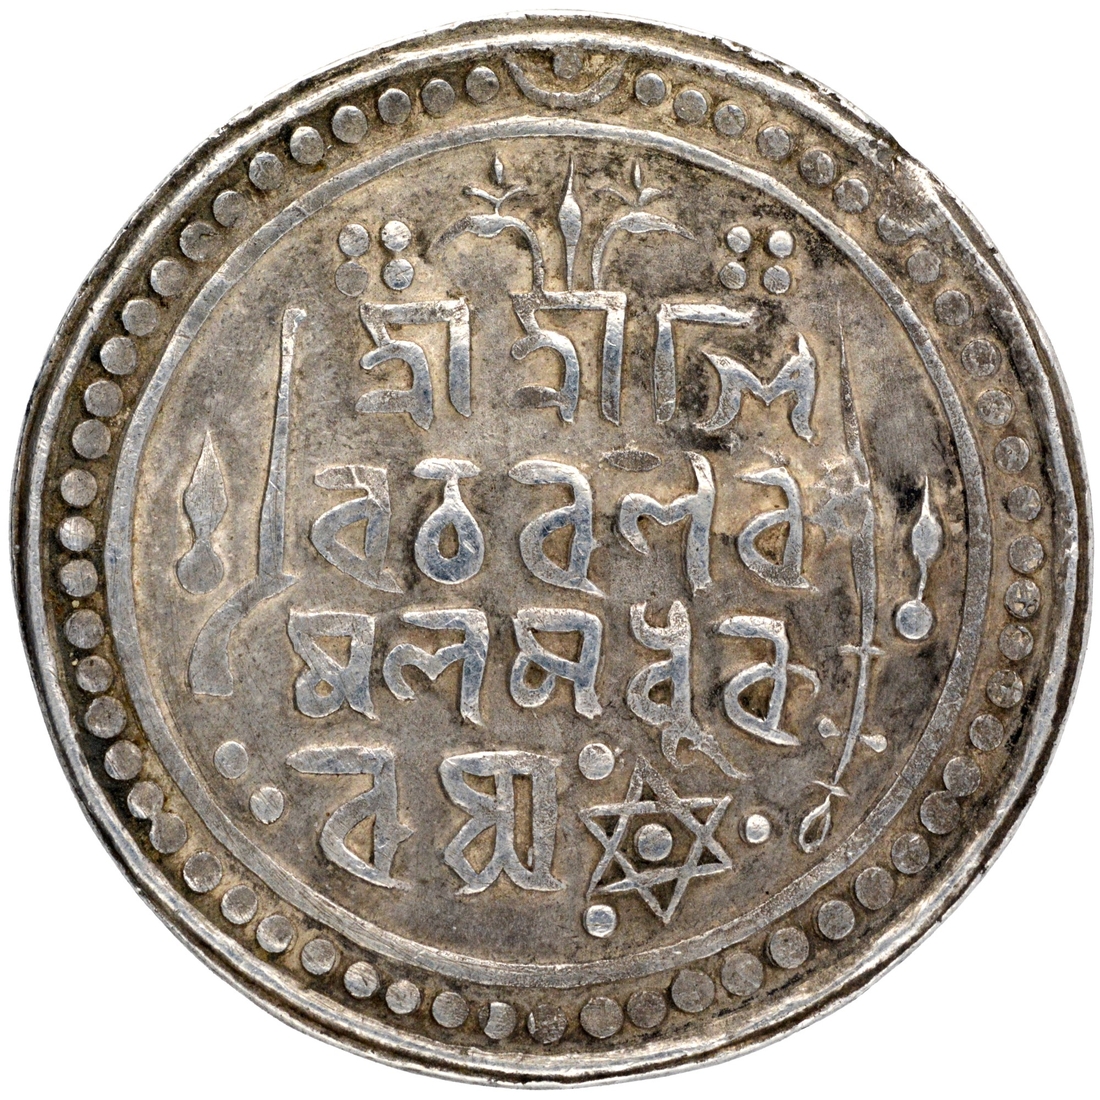 Silver One Rupee Coin of Jatra Narayan of Jaintiapur.